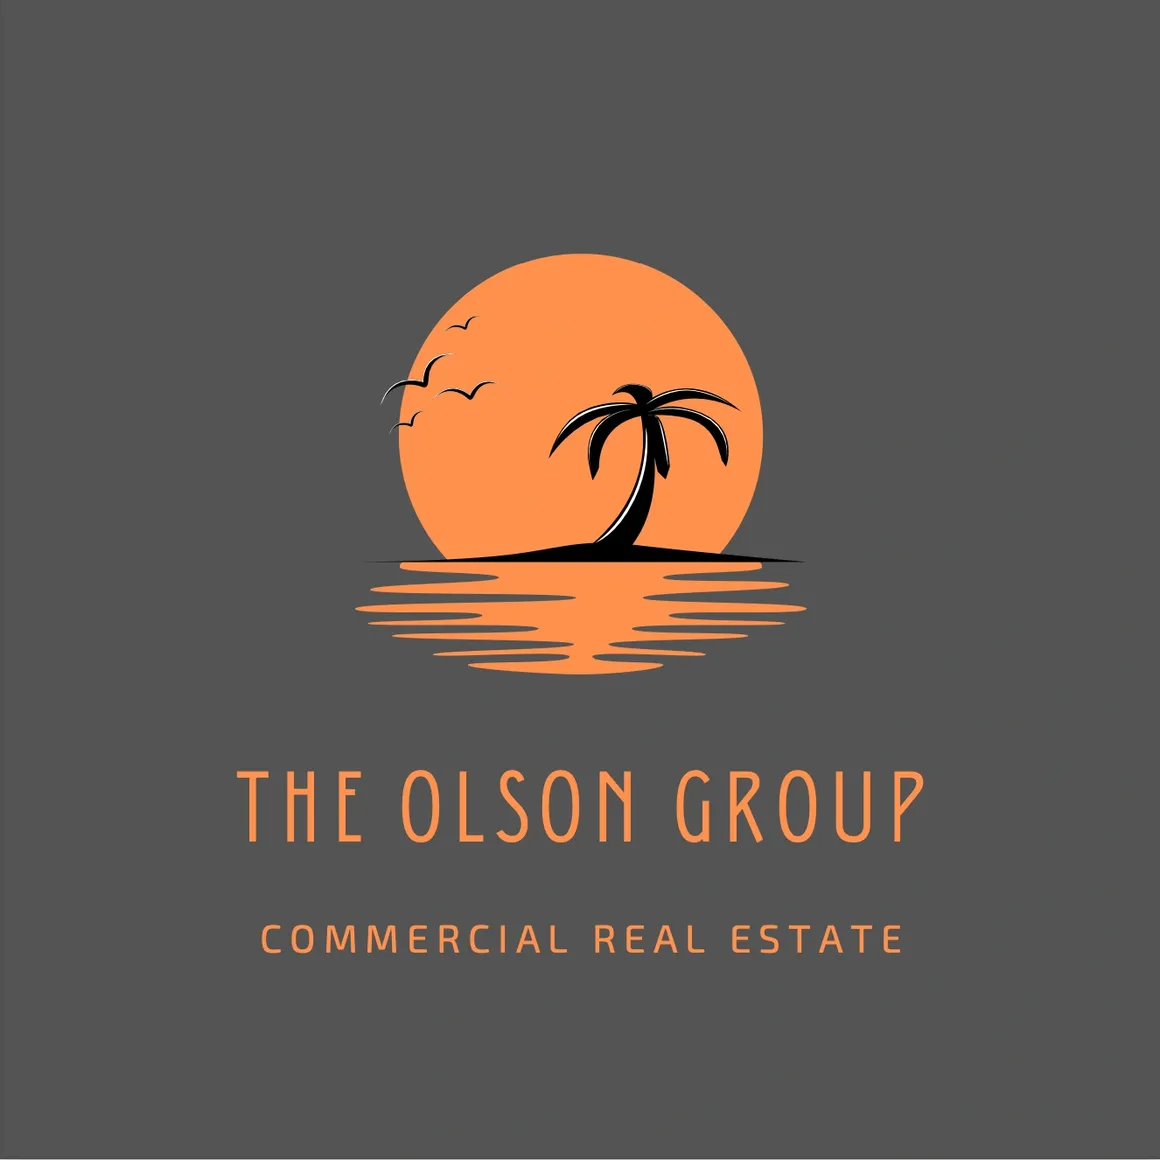 The Olson Group